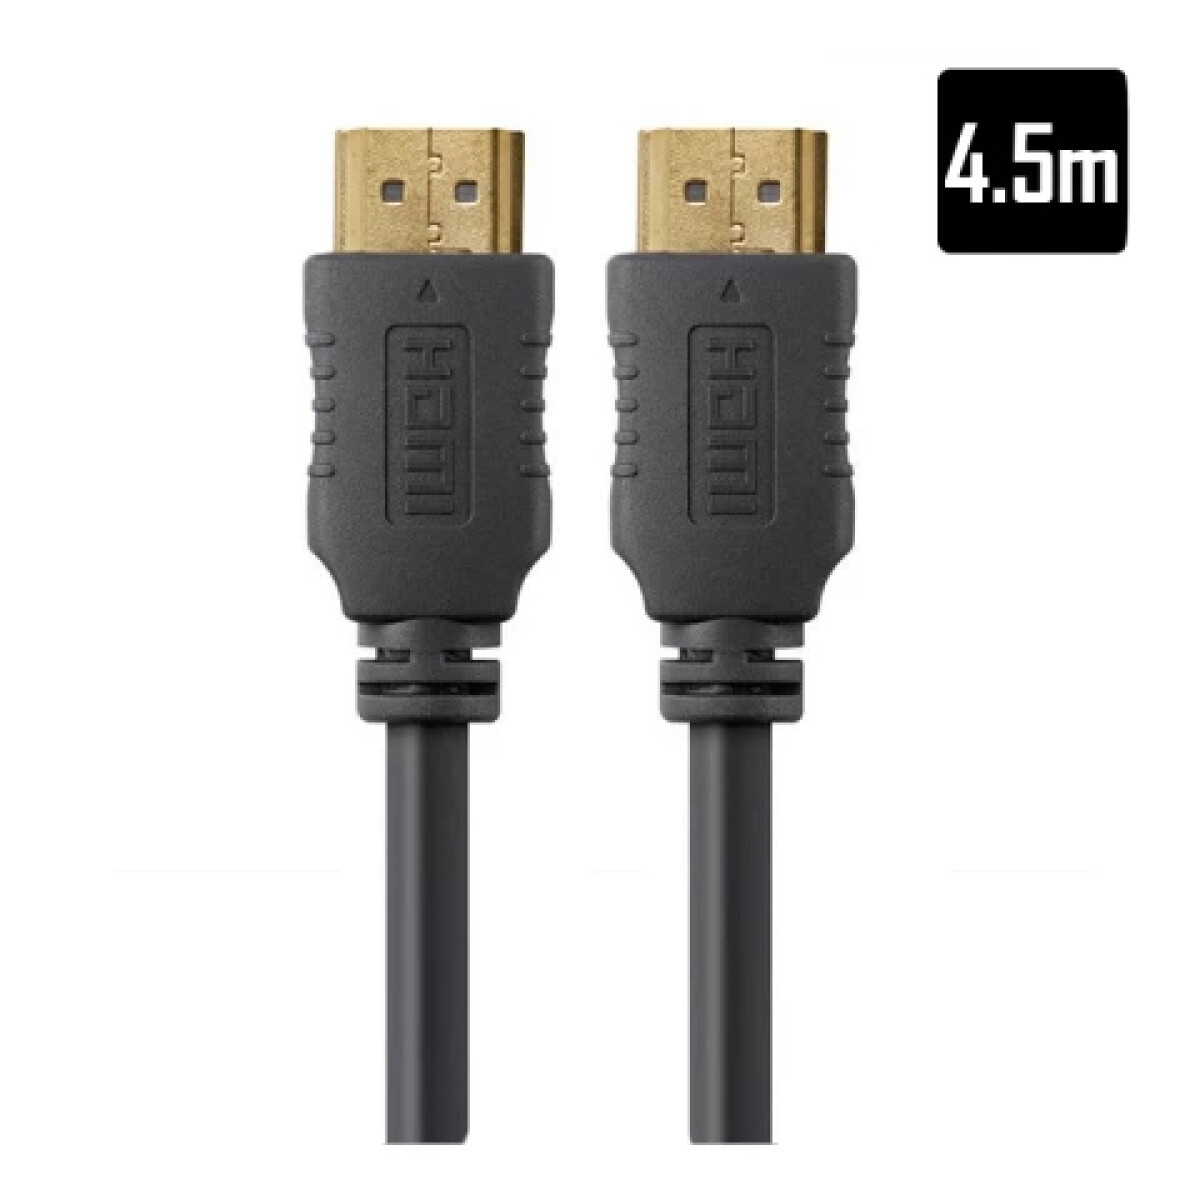 Cable HDMI Unno 4.5M/15FT - Unica 